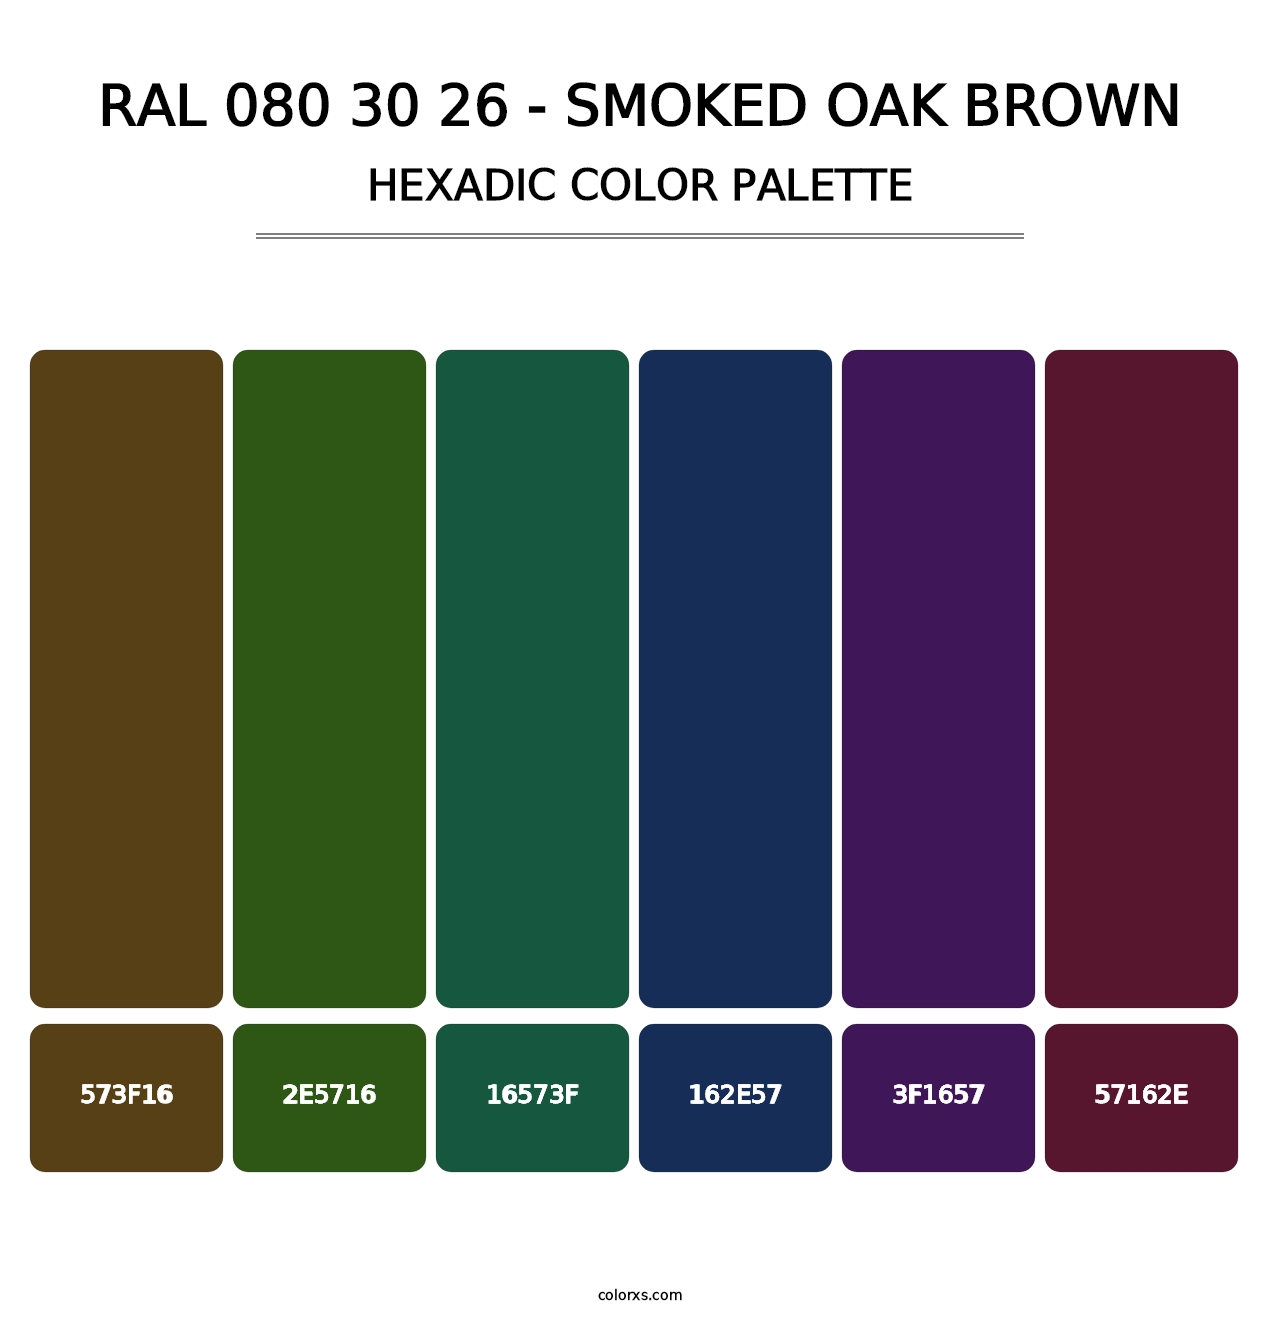 RAL 080 30 26 - Smoked Oak Brown - Hexadic Color Palette